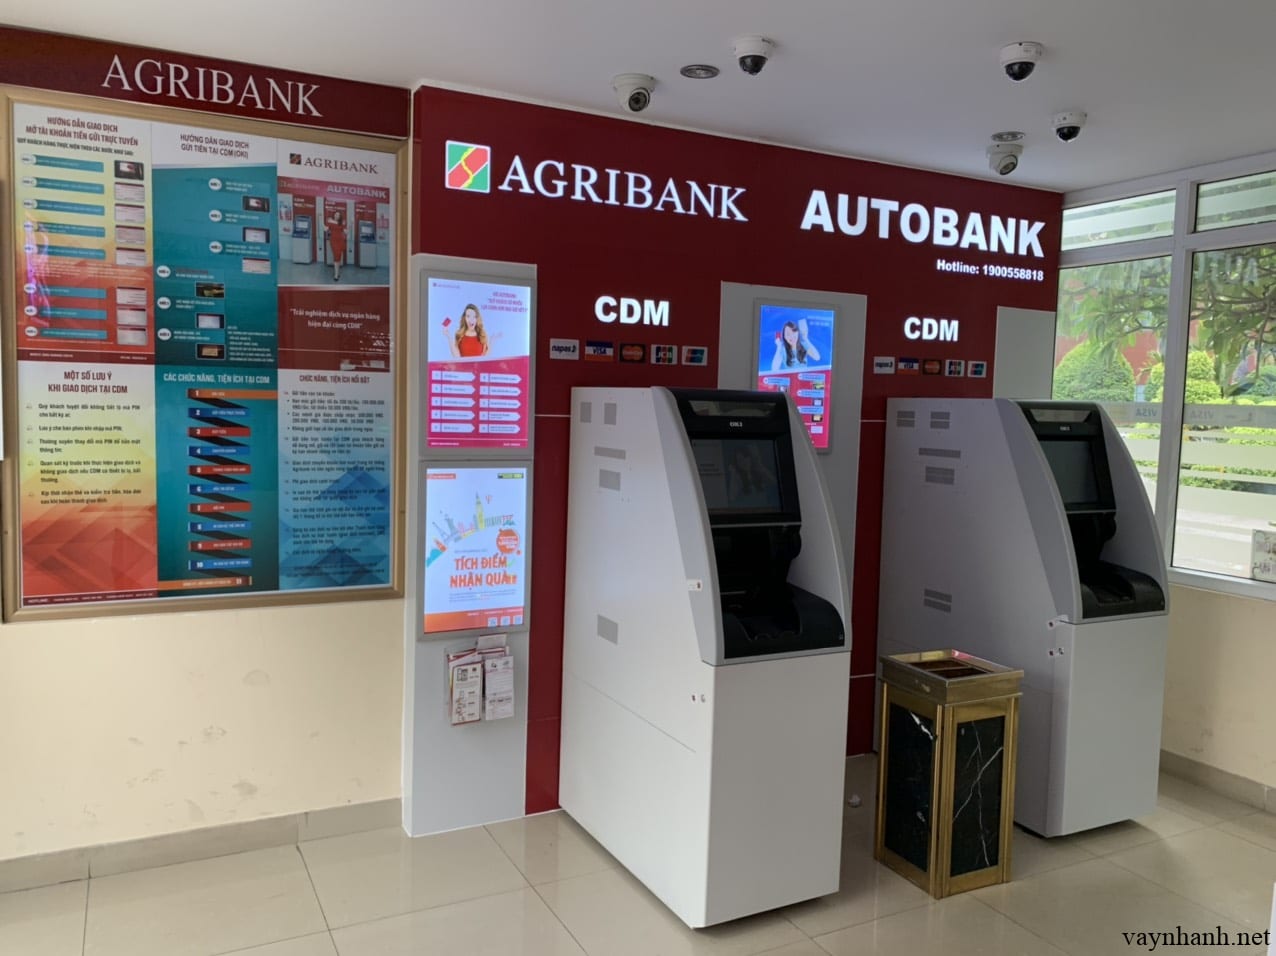 Danh sách ATM Agribank tại TP Hồ Chí Minh gần đây